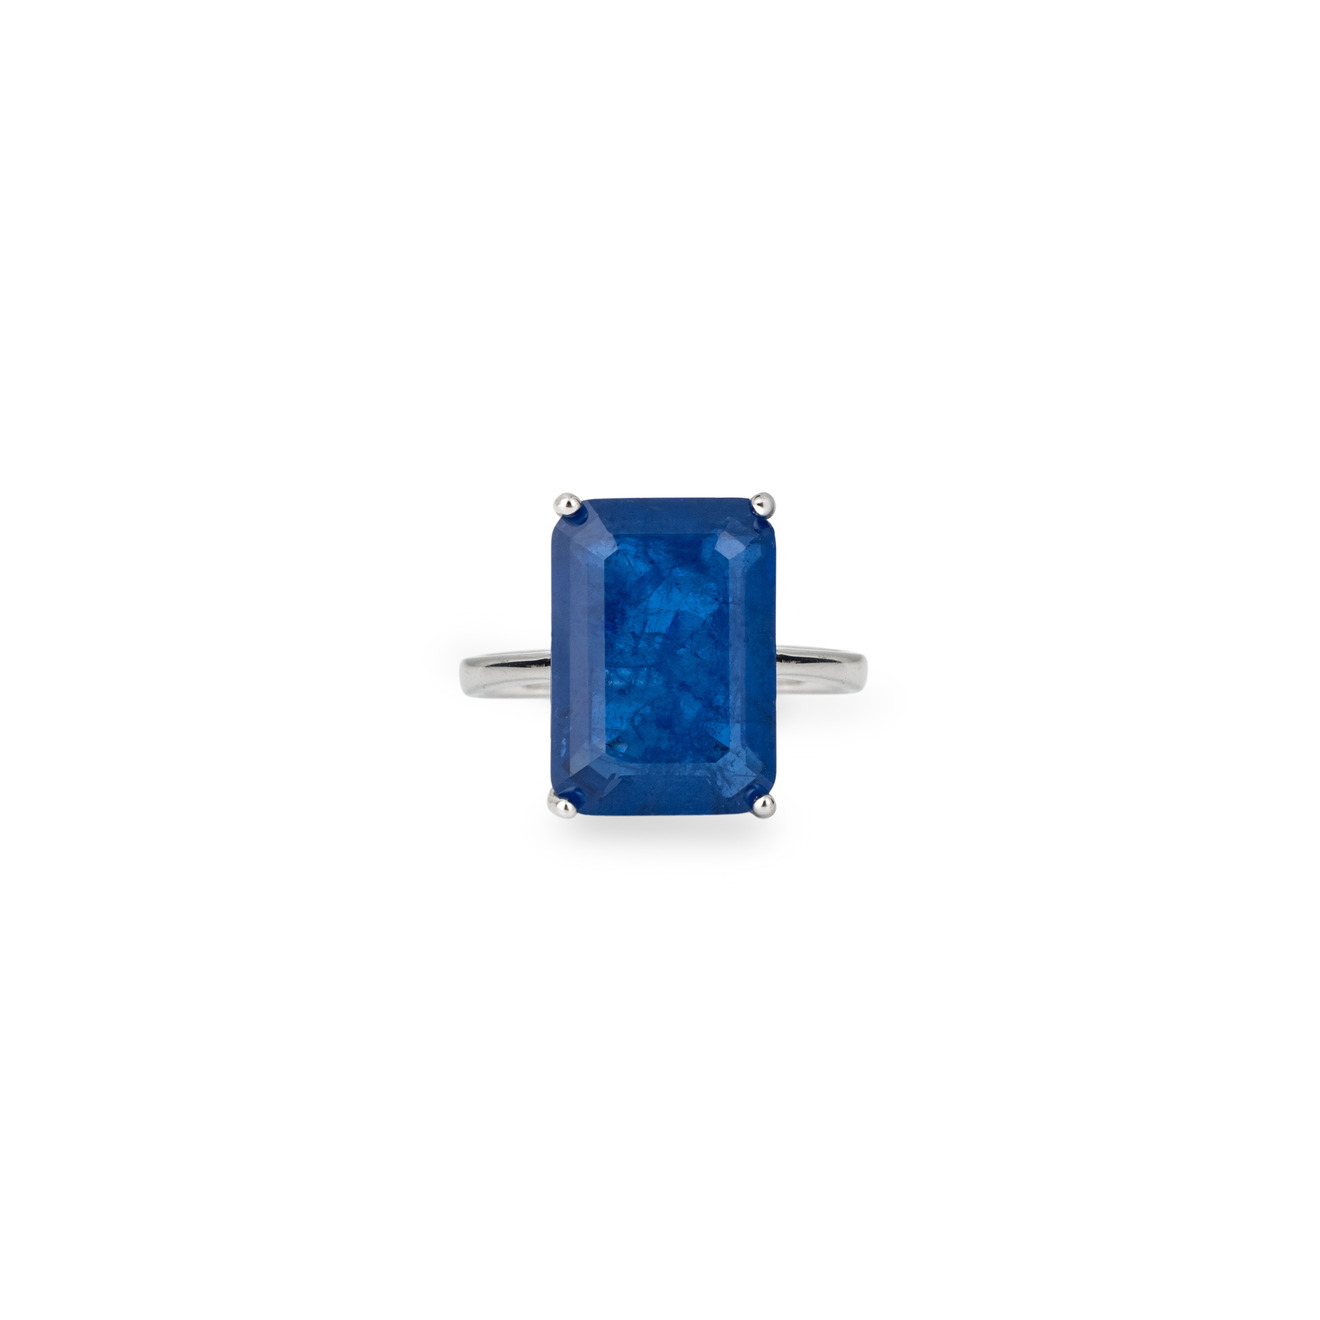 Holy Silver Серебряное кольцо с крупным синим прямоугольным кристаллом